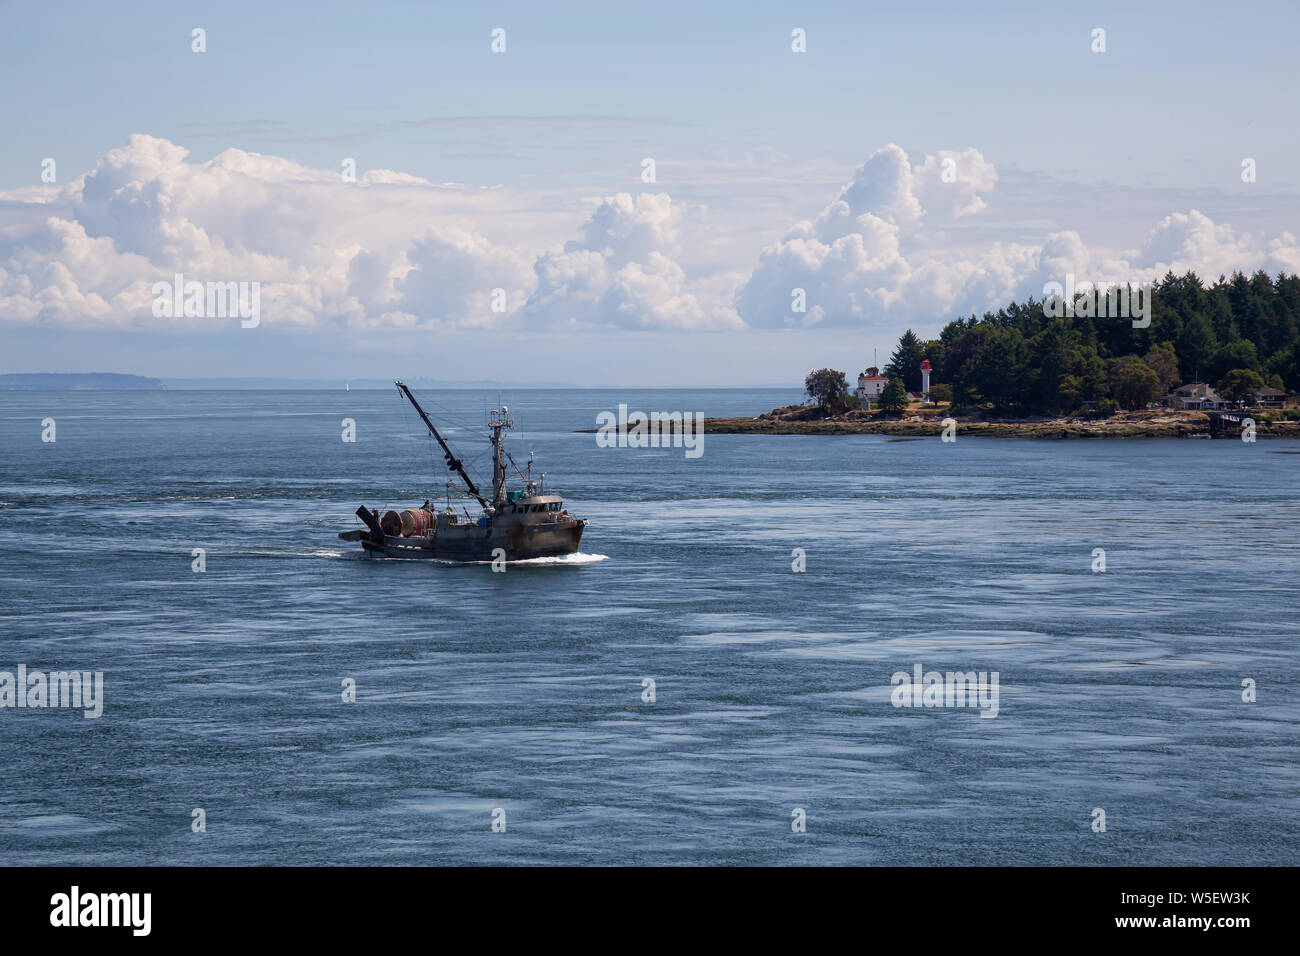 Reiten Angeln Boot gegen den Strom in der Nähe von Gulf Islands, Vancouver Island, British Columbia, Kanada verengt, der an einem sonnigen Sommertag. Stockfoto